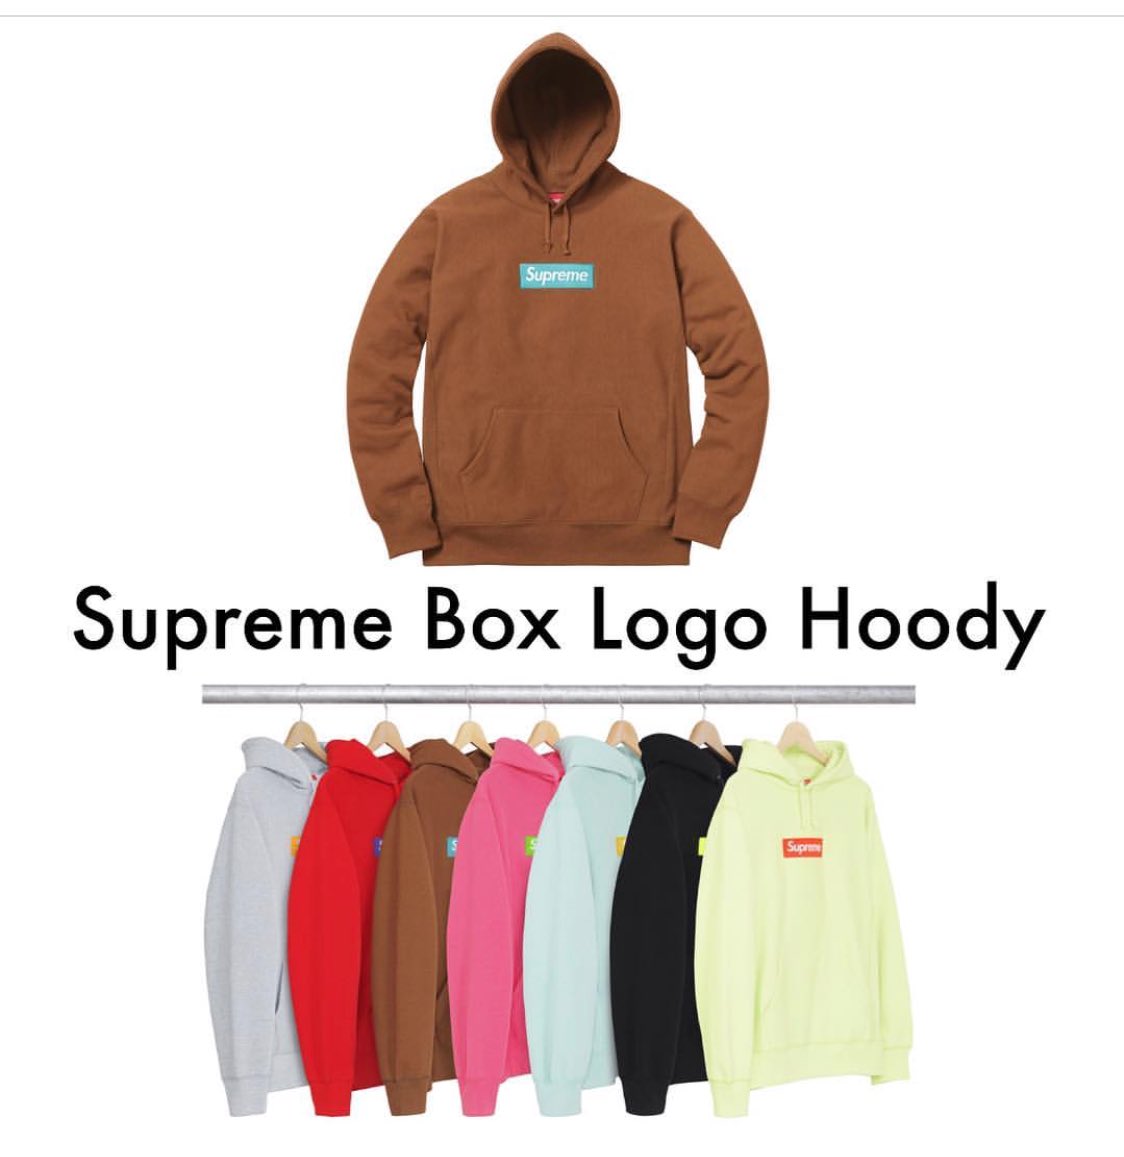 Supreme 2016 Box Logo Hoodie Drop Traffic Numbers